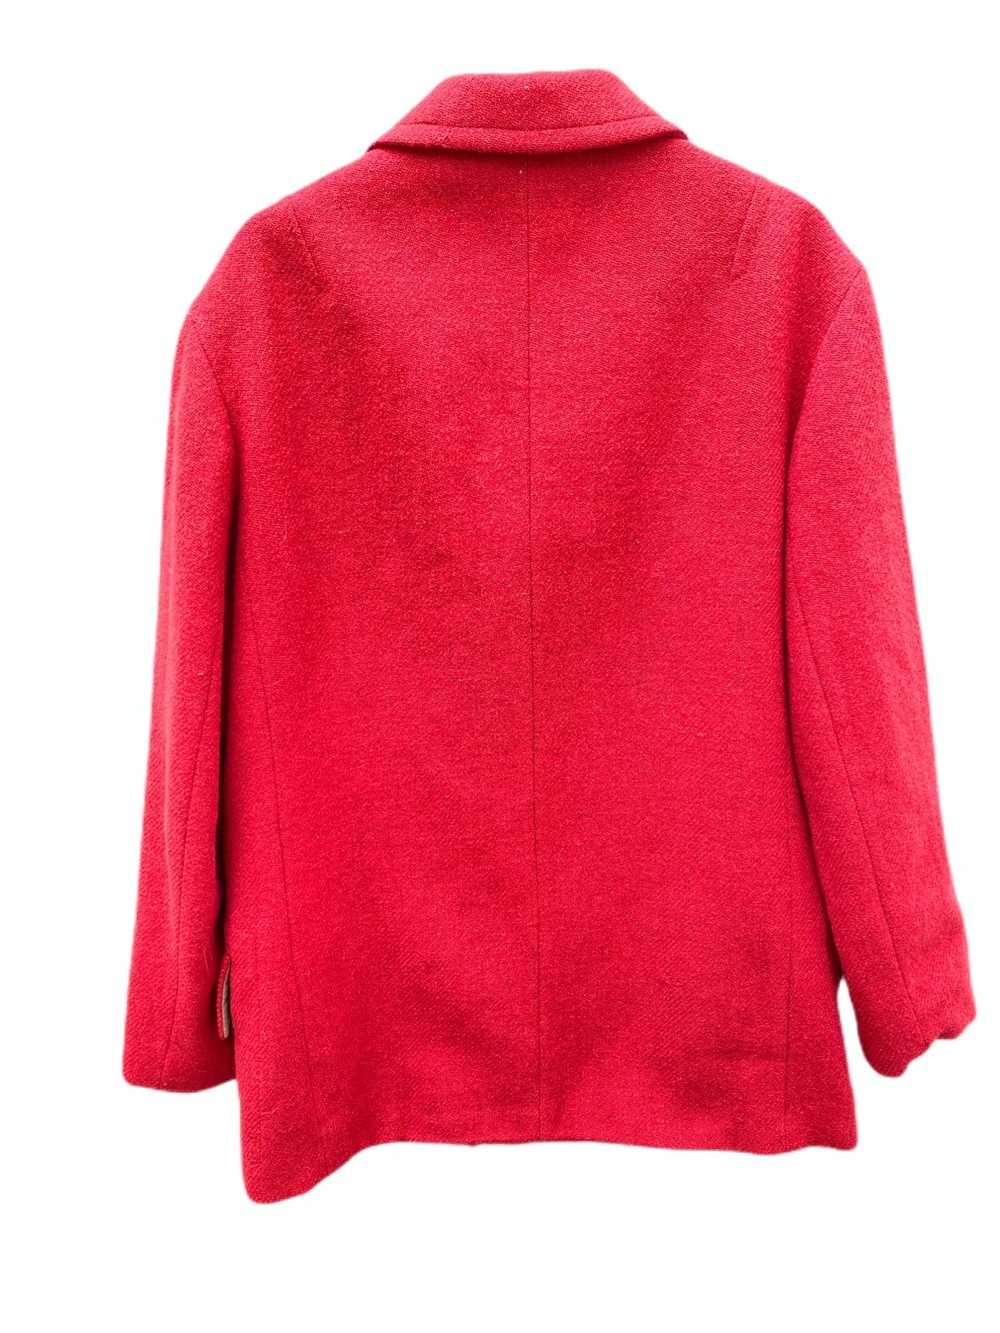 Dries Van Noten Red Wool Peacoat - image 4